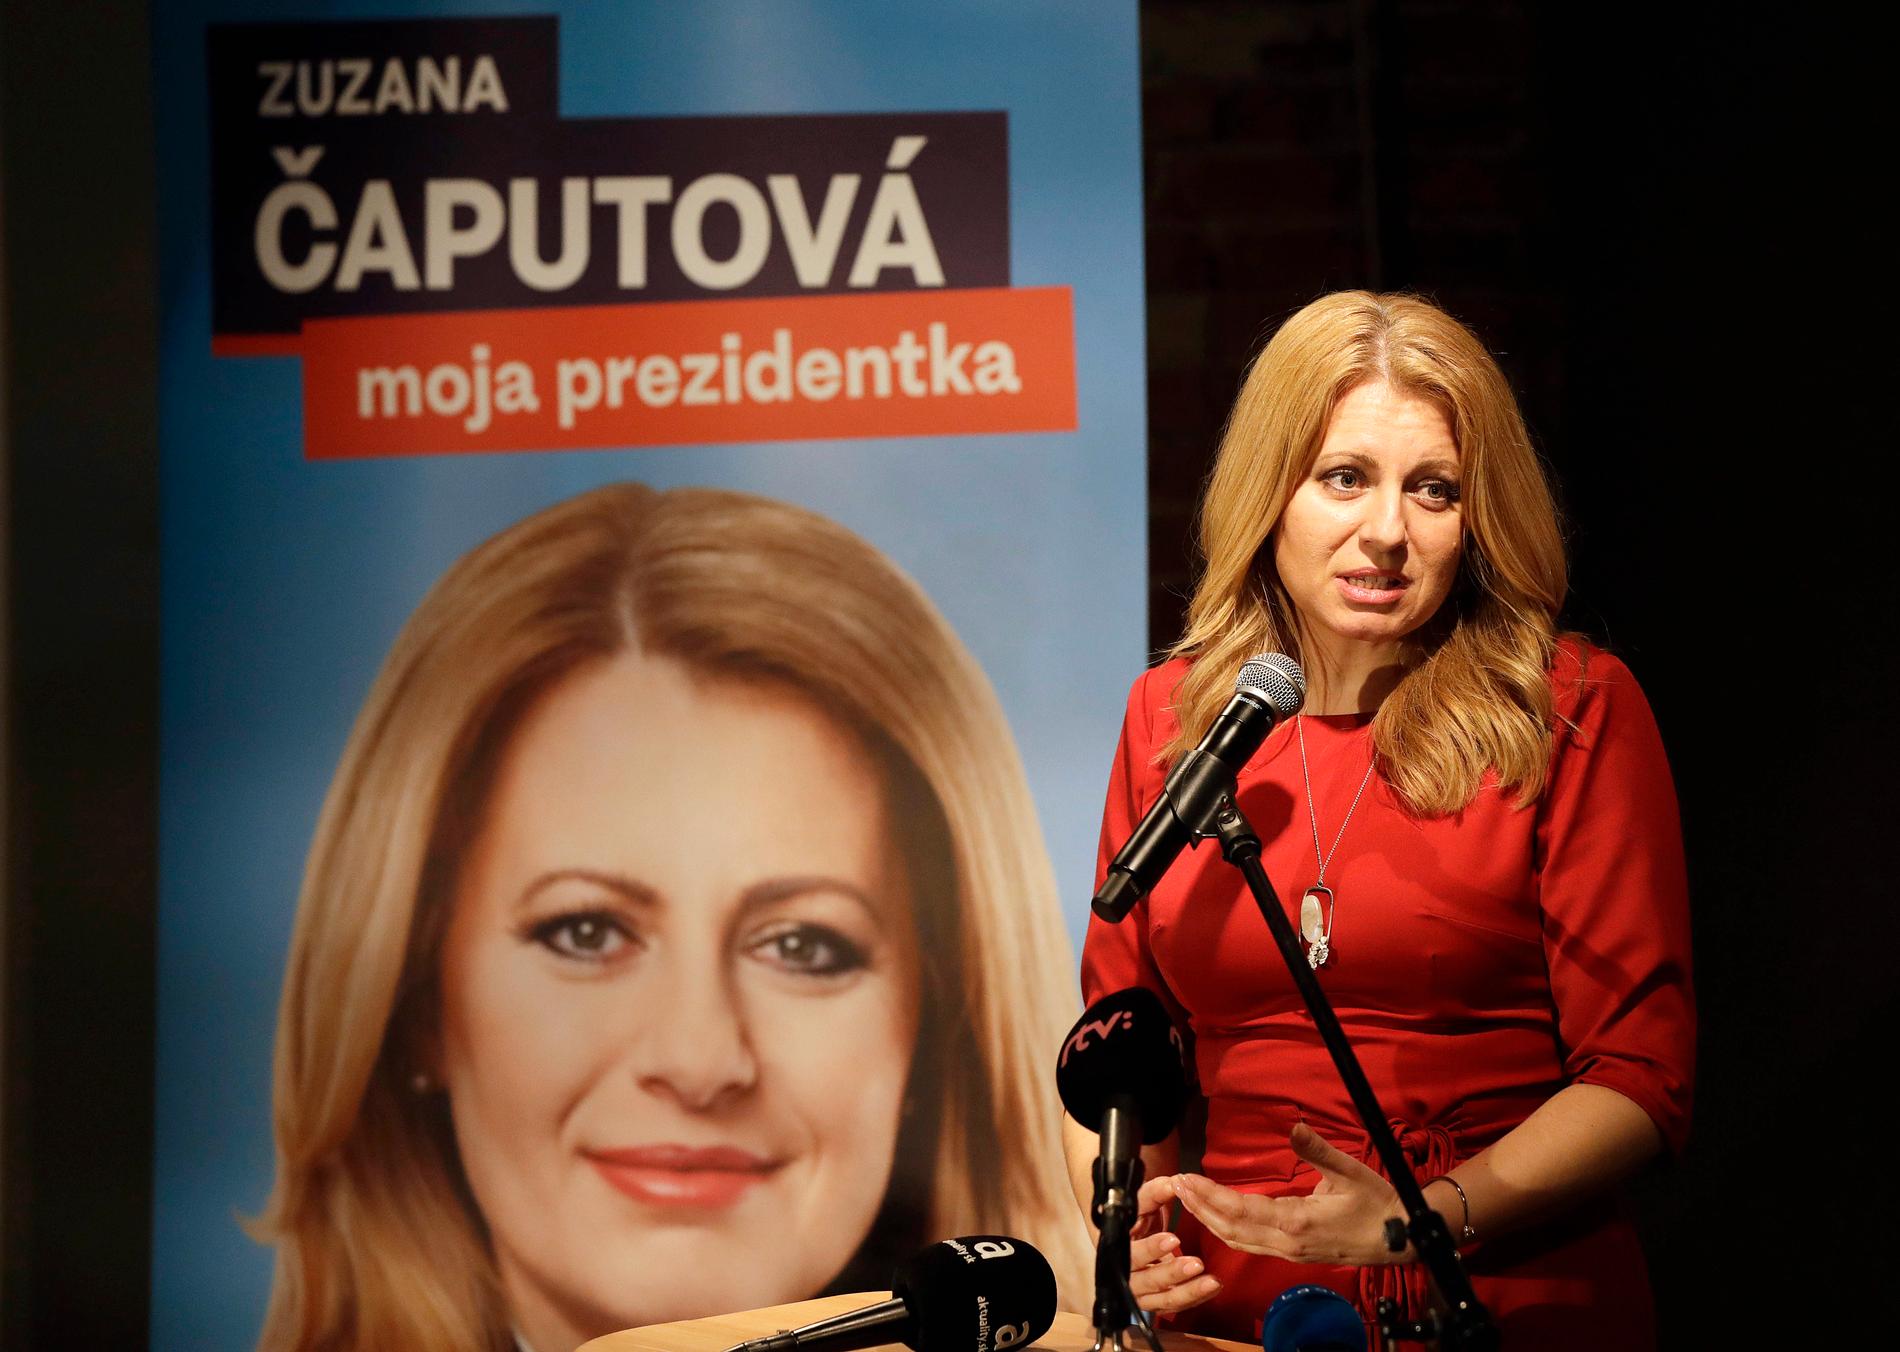 Zuzana Caputova blir Slovakiens första kvinnliga president.